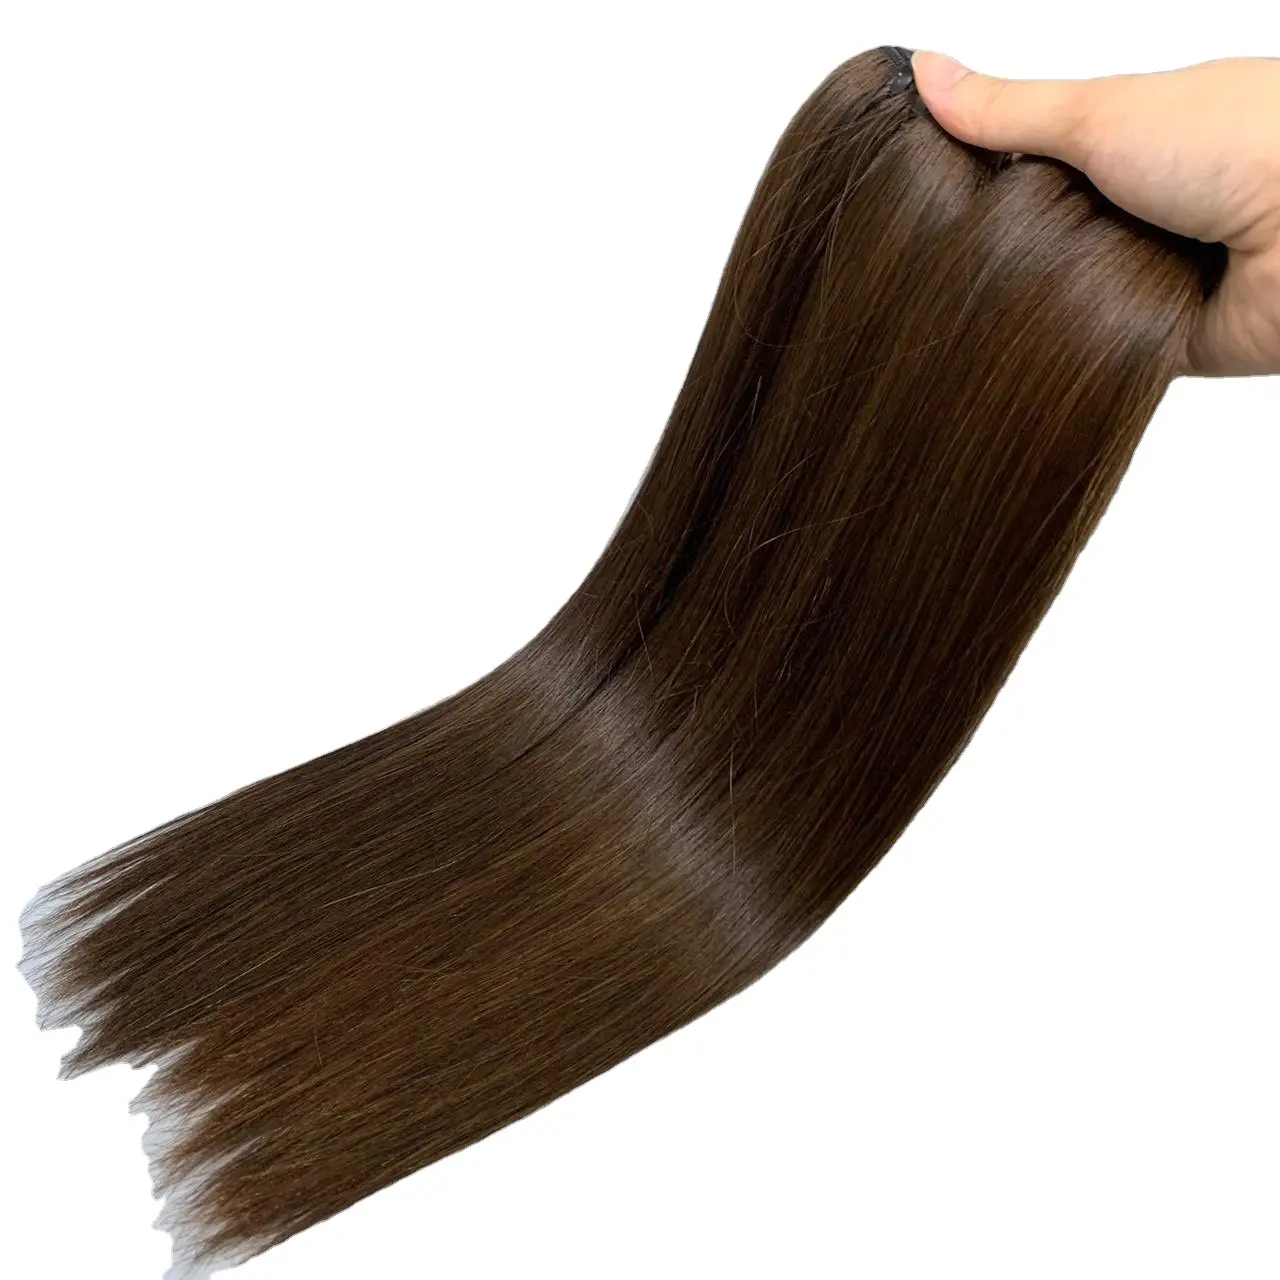 Заводская цена, вьетнамский прозрачный парик из натуральных волос на шнурках, высокое качество и естественный вид, 100% необработанные волосы для наращивания